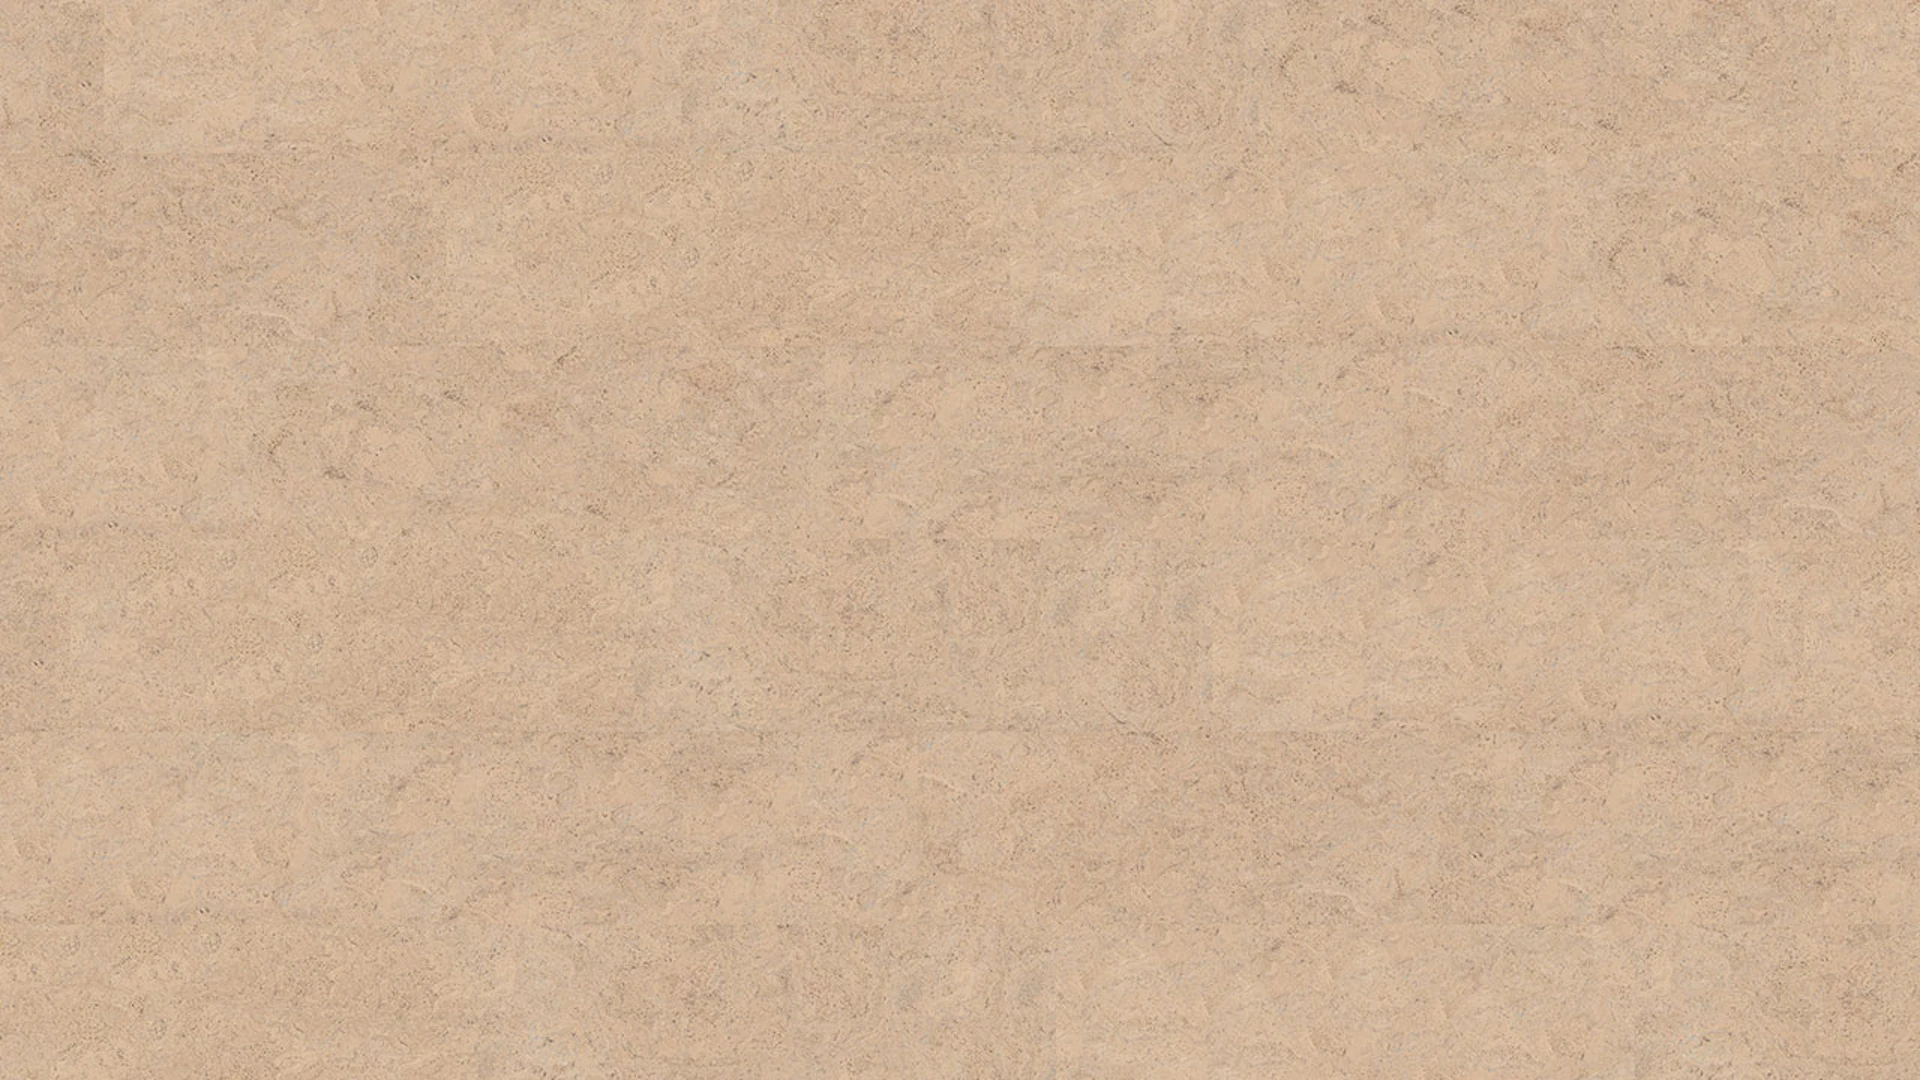 KWG pavimento in sughero - Q-Exclusivo Barriga Crema di Barriga cotta a mano